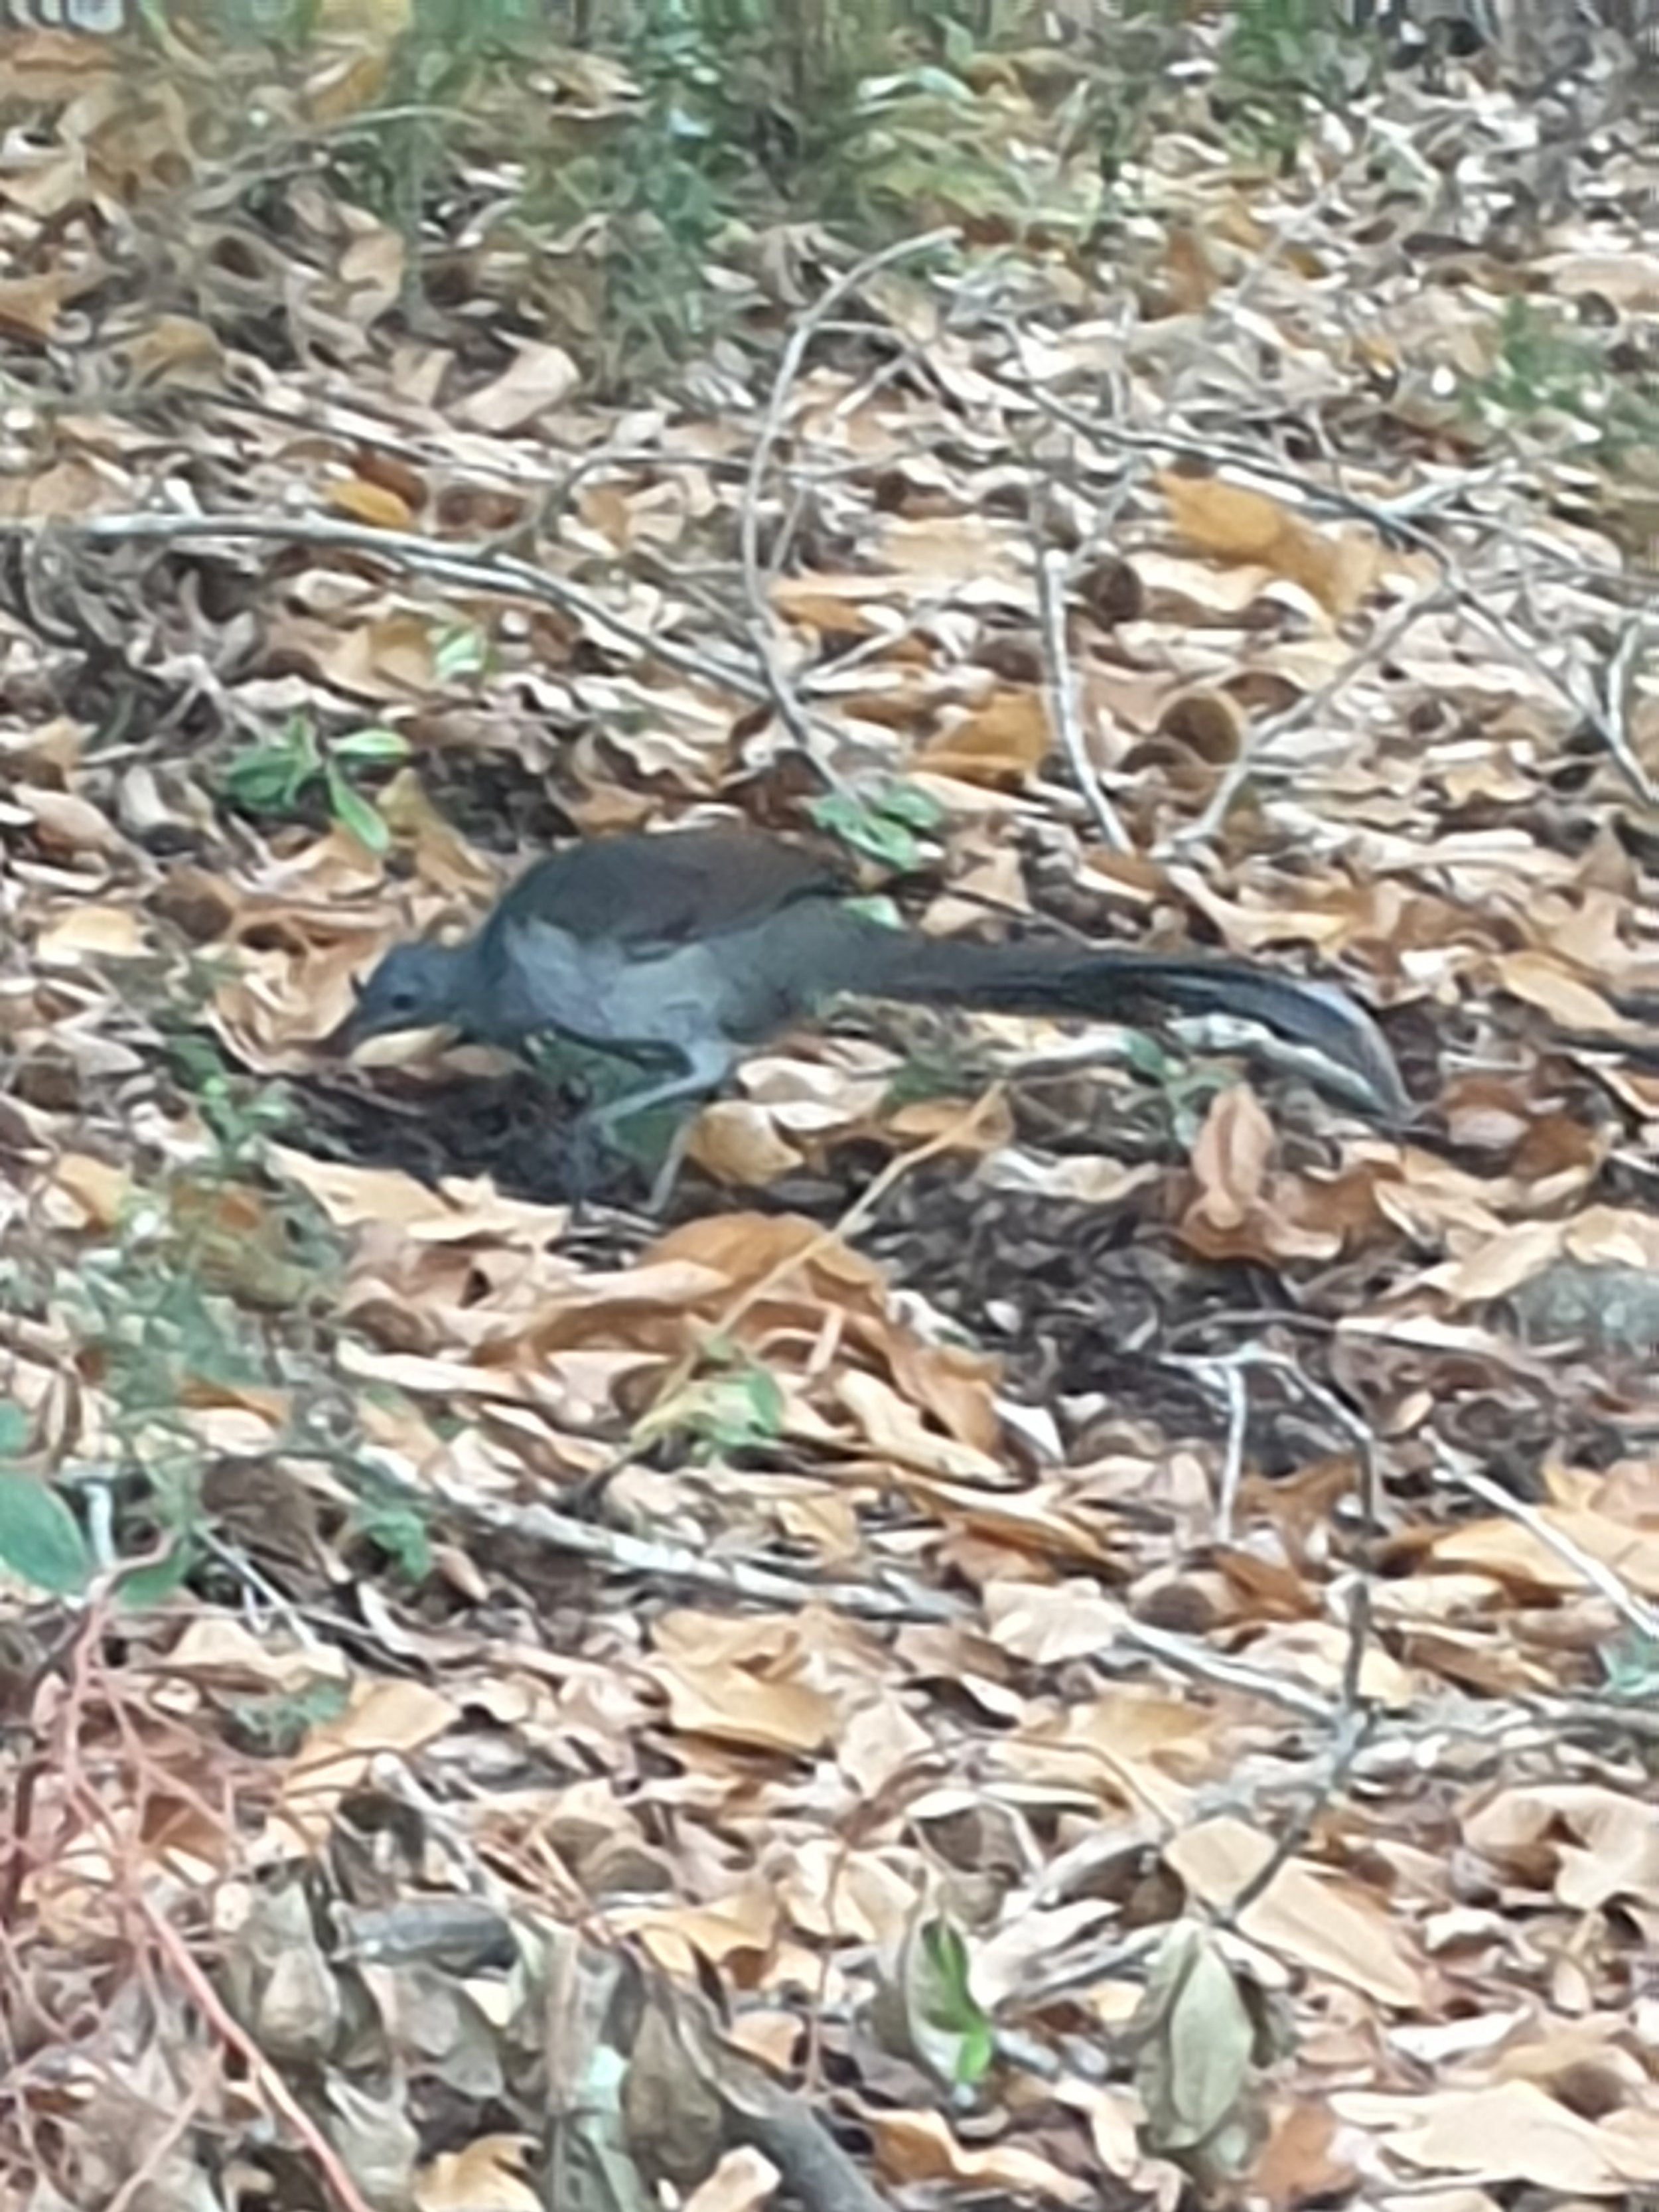 Lyrebird foraging on leafy ground